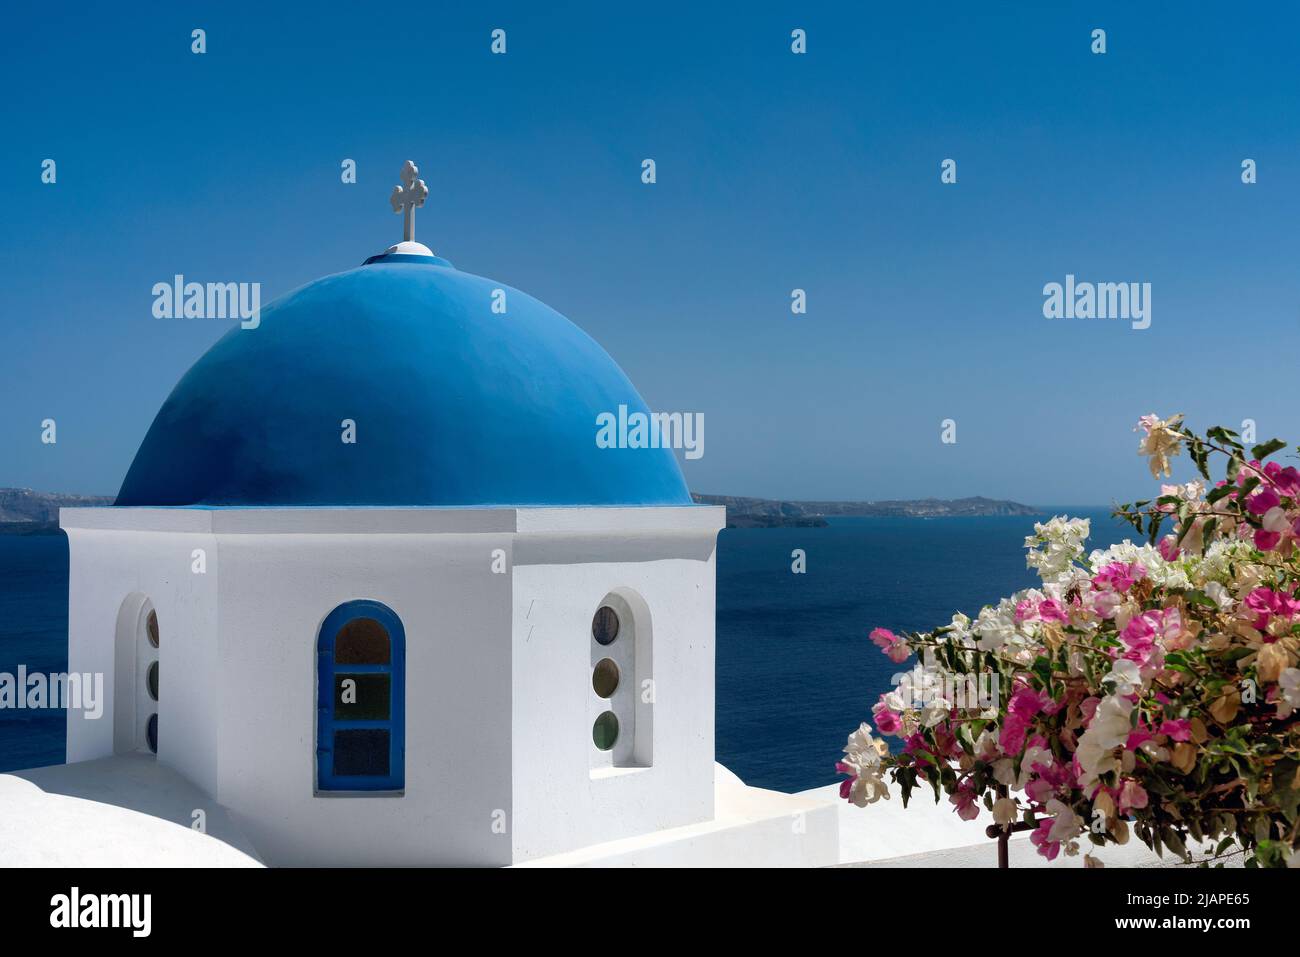 Chiesa a cupola blu, imbiancata di bianco, Santorini. Santorini è una delle isole Cicladi del Mar Egeo. Grecia. Foto Stock